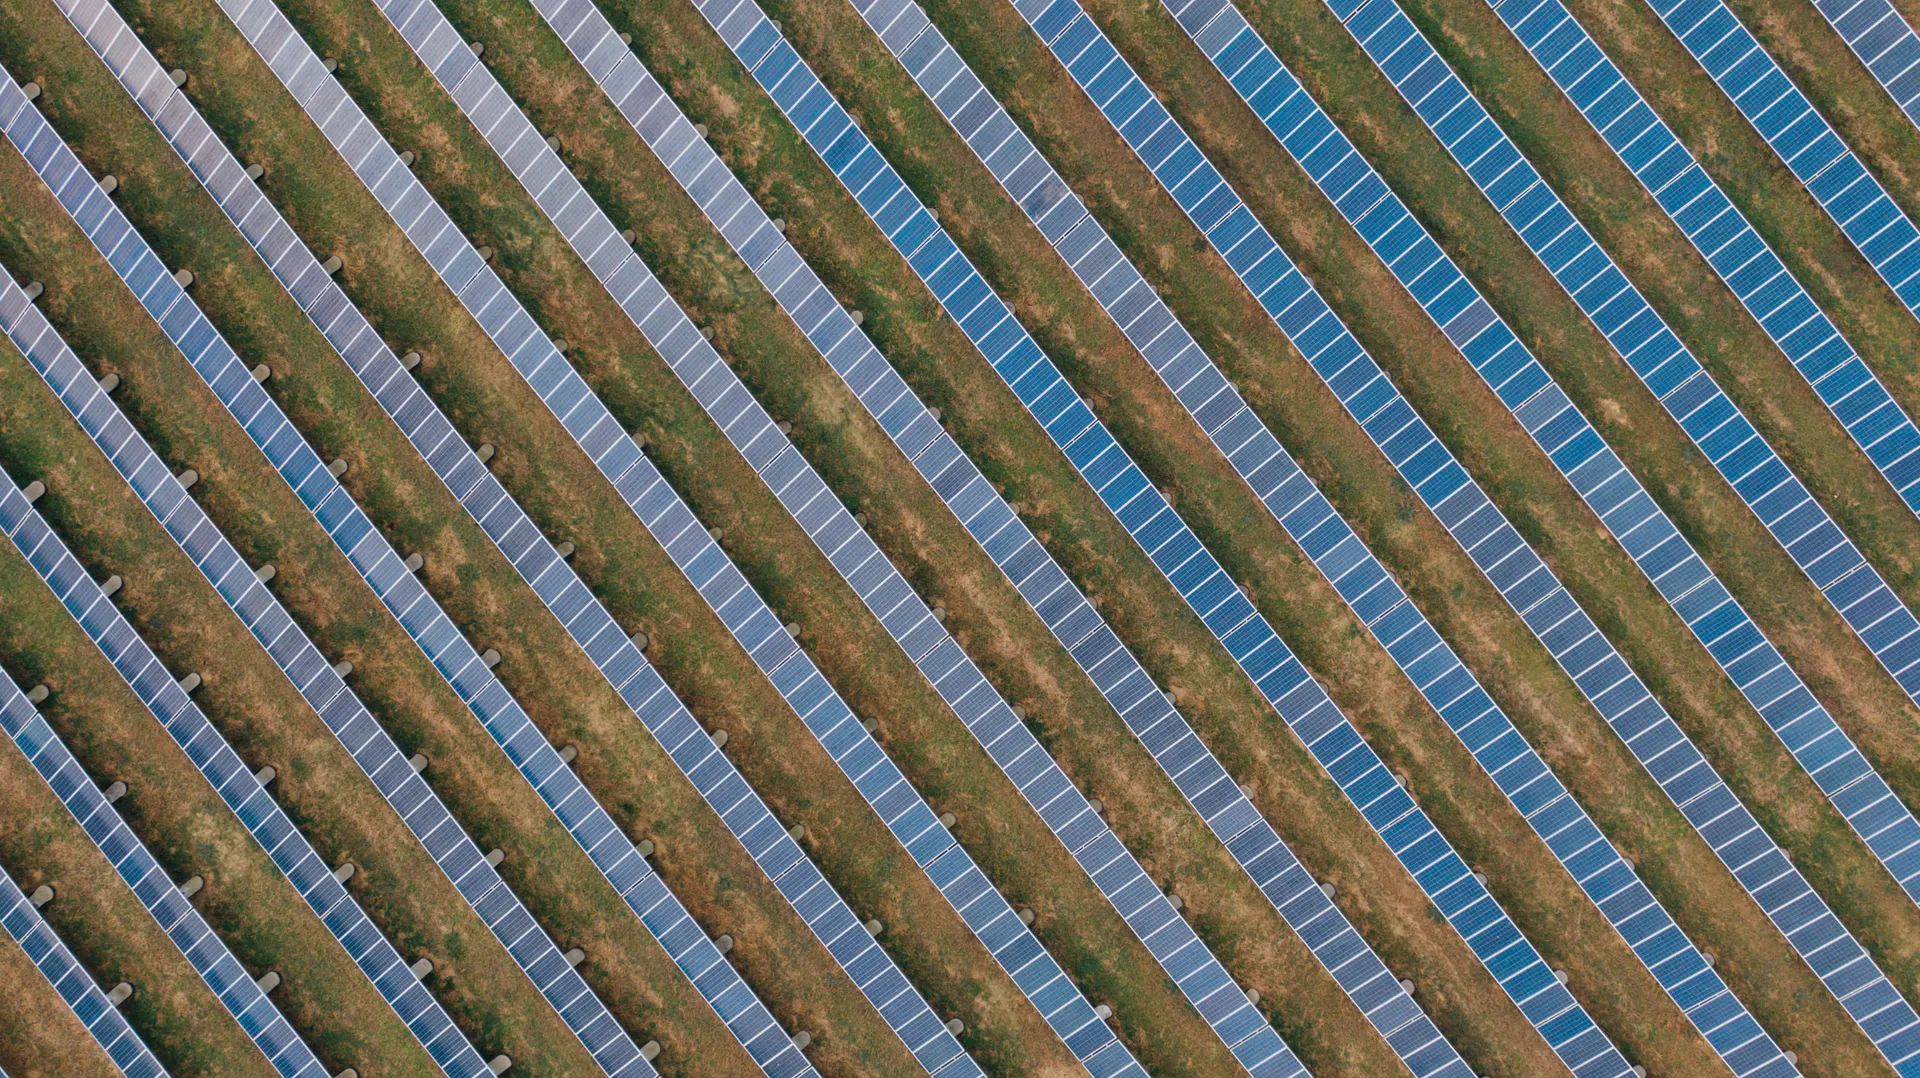 Vista aérea de diversos painéis solares em usina fotovoltaica